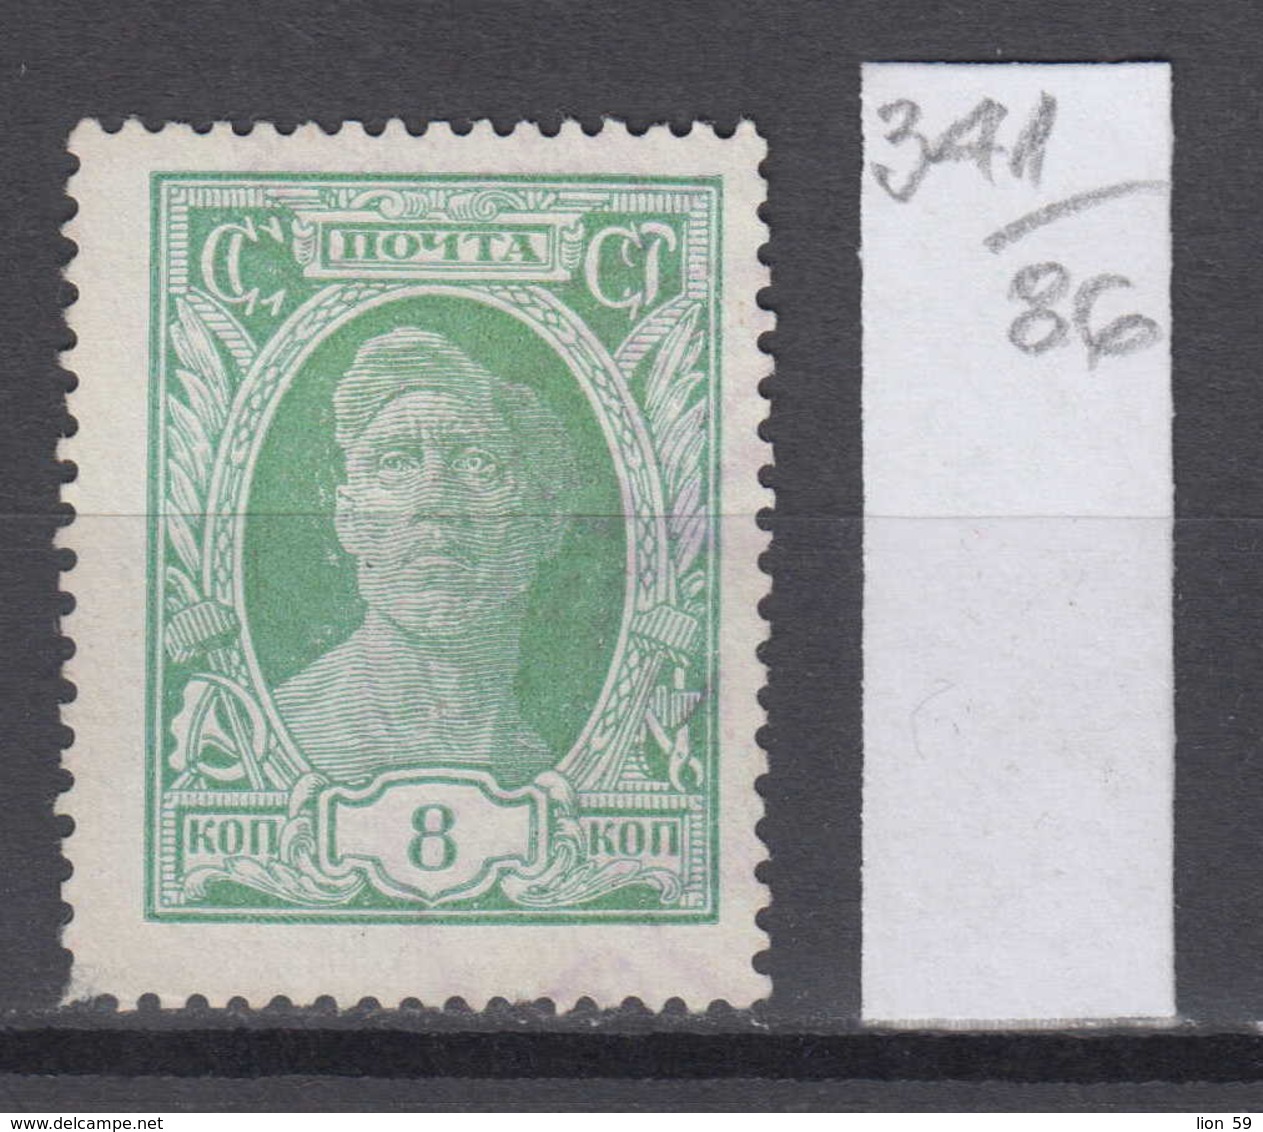 86K341 / 1927 - Michel Nr. 344 - 8 K. Freimarken - Bdr. , OWz. , Ks 13 1/2 , Arbeiter , Used ( O ) Russia Russie - Oblitérés